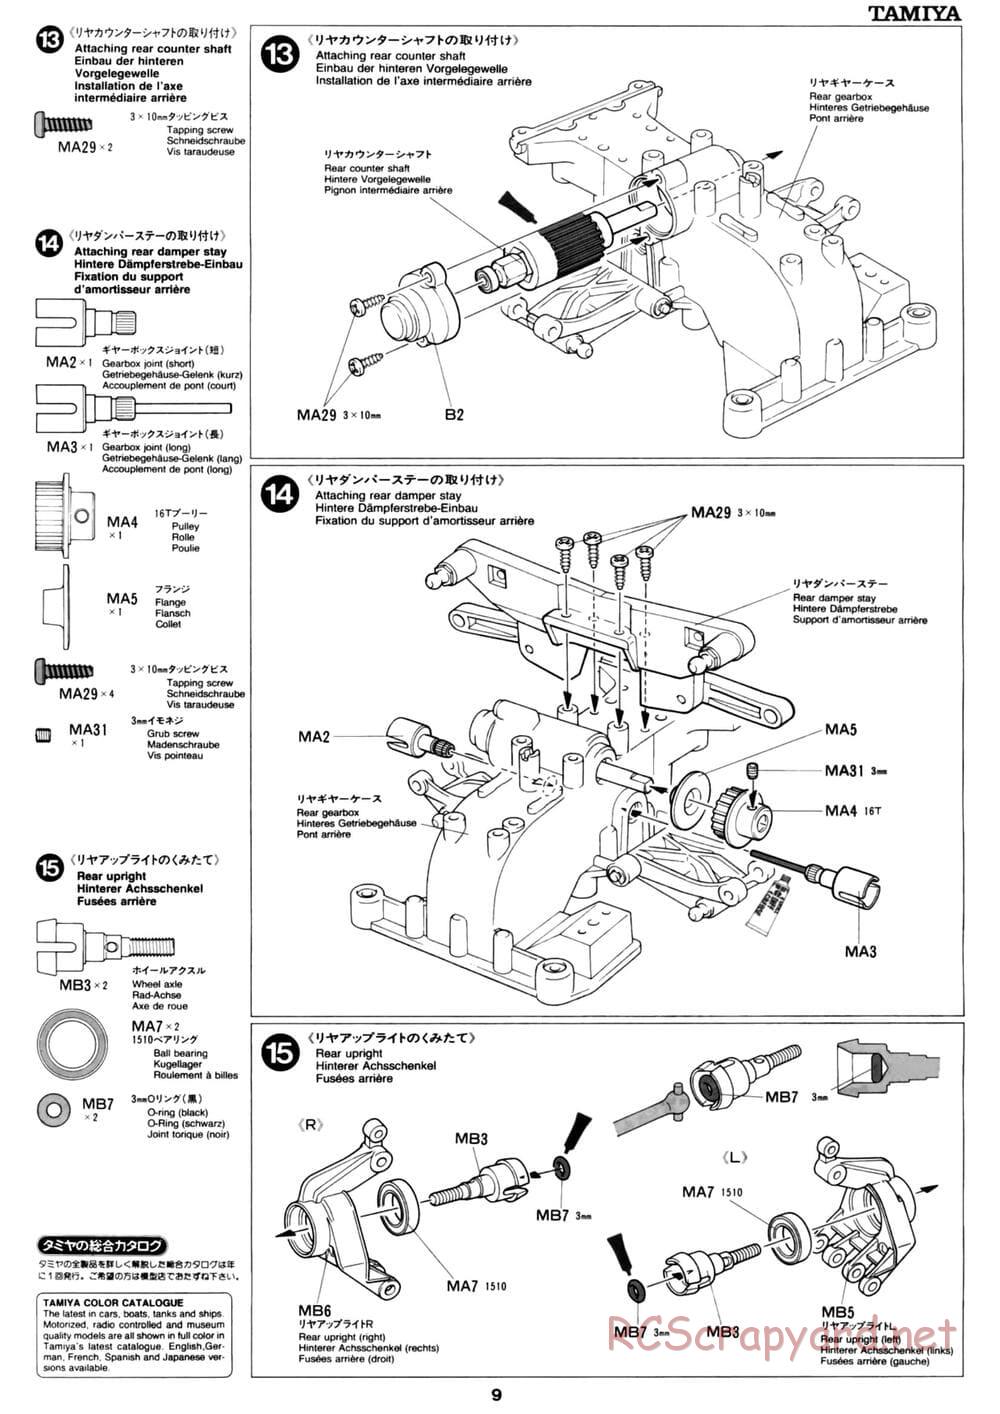 Tamiya - David Jun TA03F Pro Chassis - Manual - Page 9